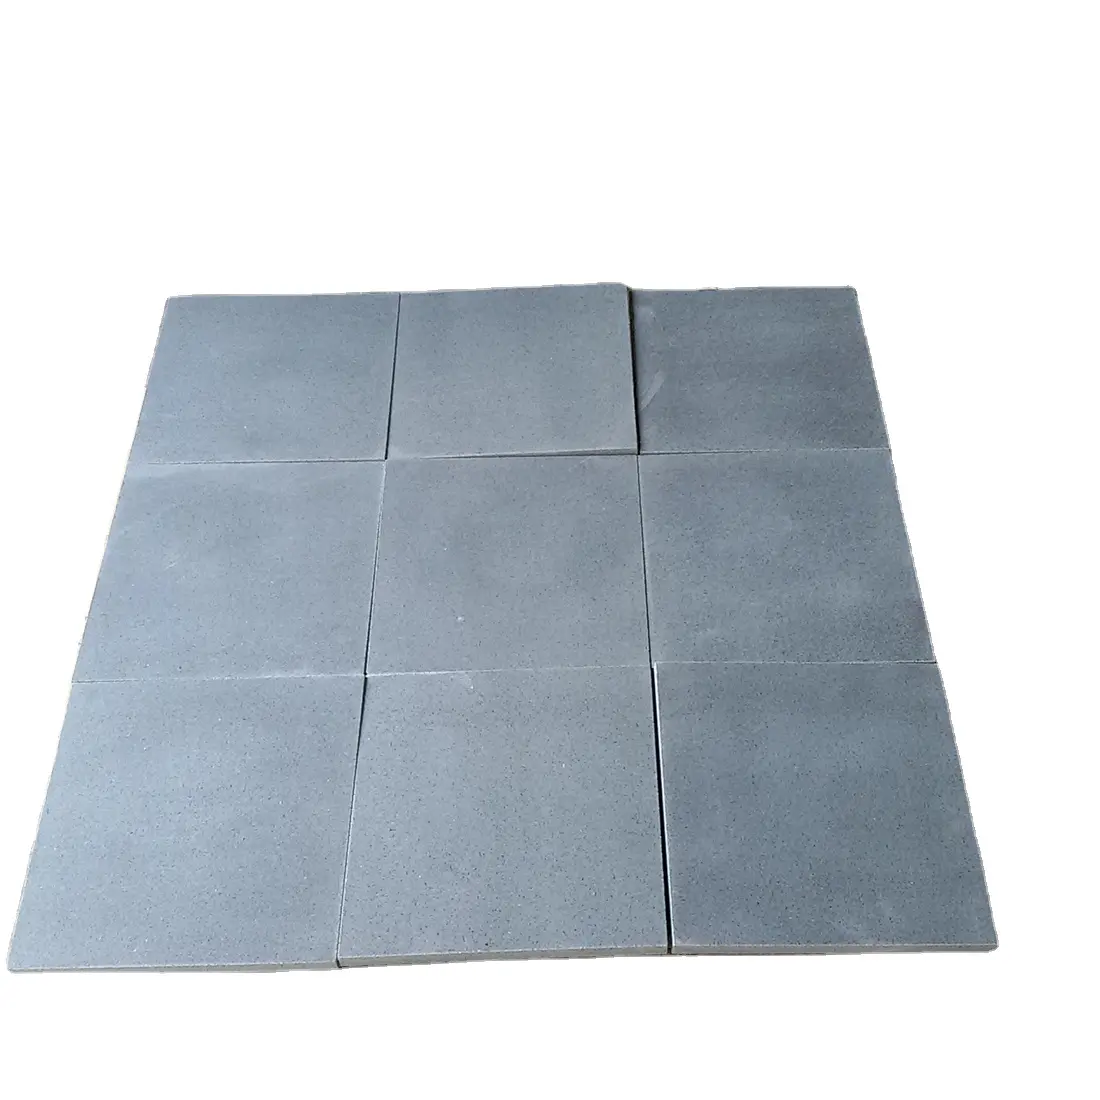 Cinese G654 granito grigio scuro sesamo nero per piastrelle, lastre, controsoffitti, scale, Cubestones